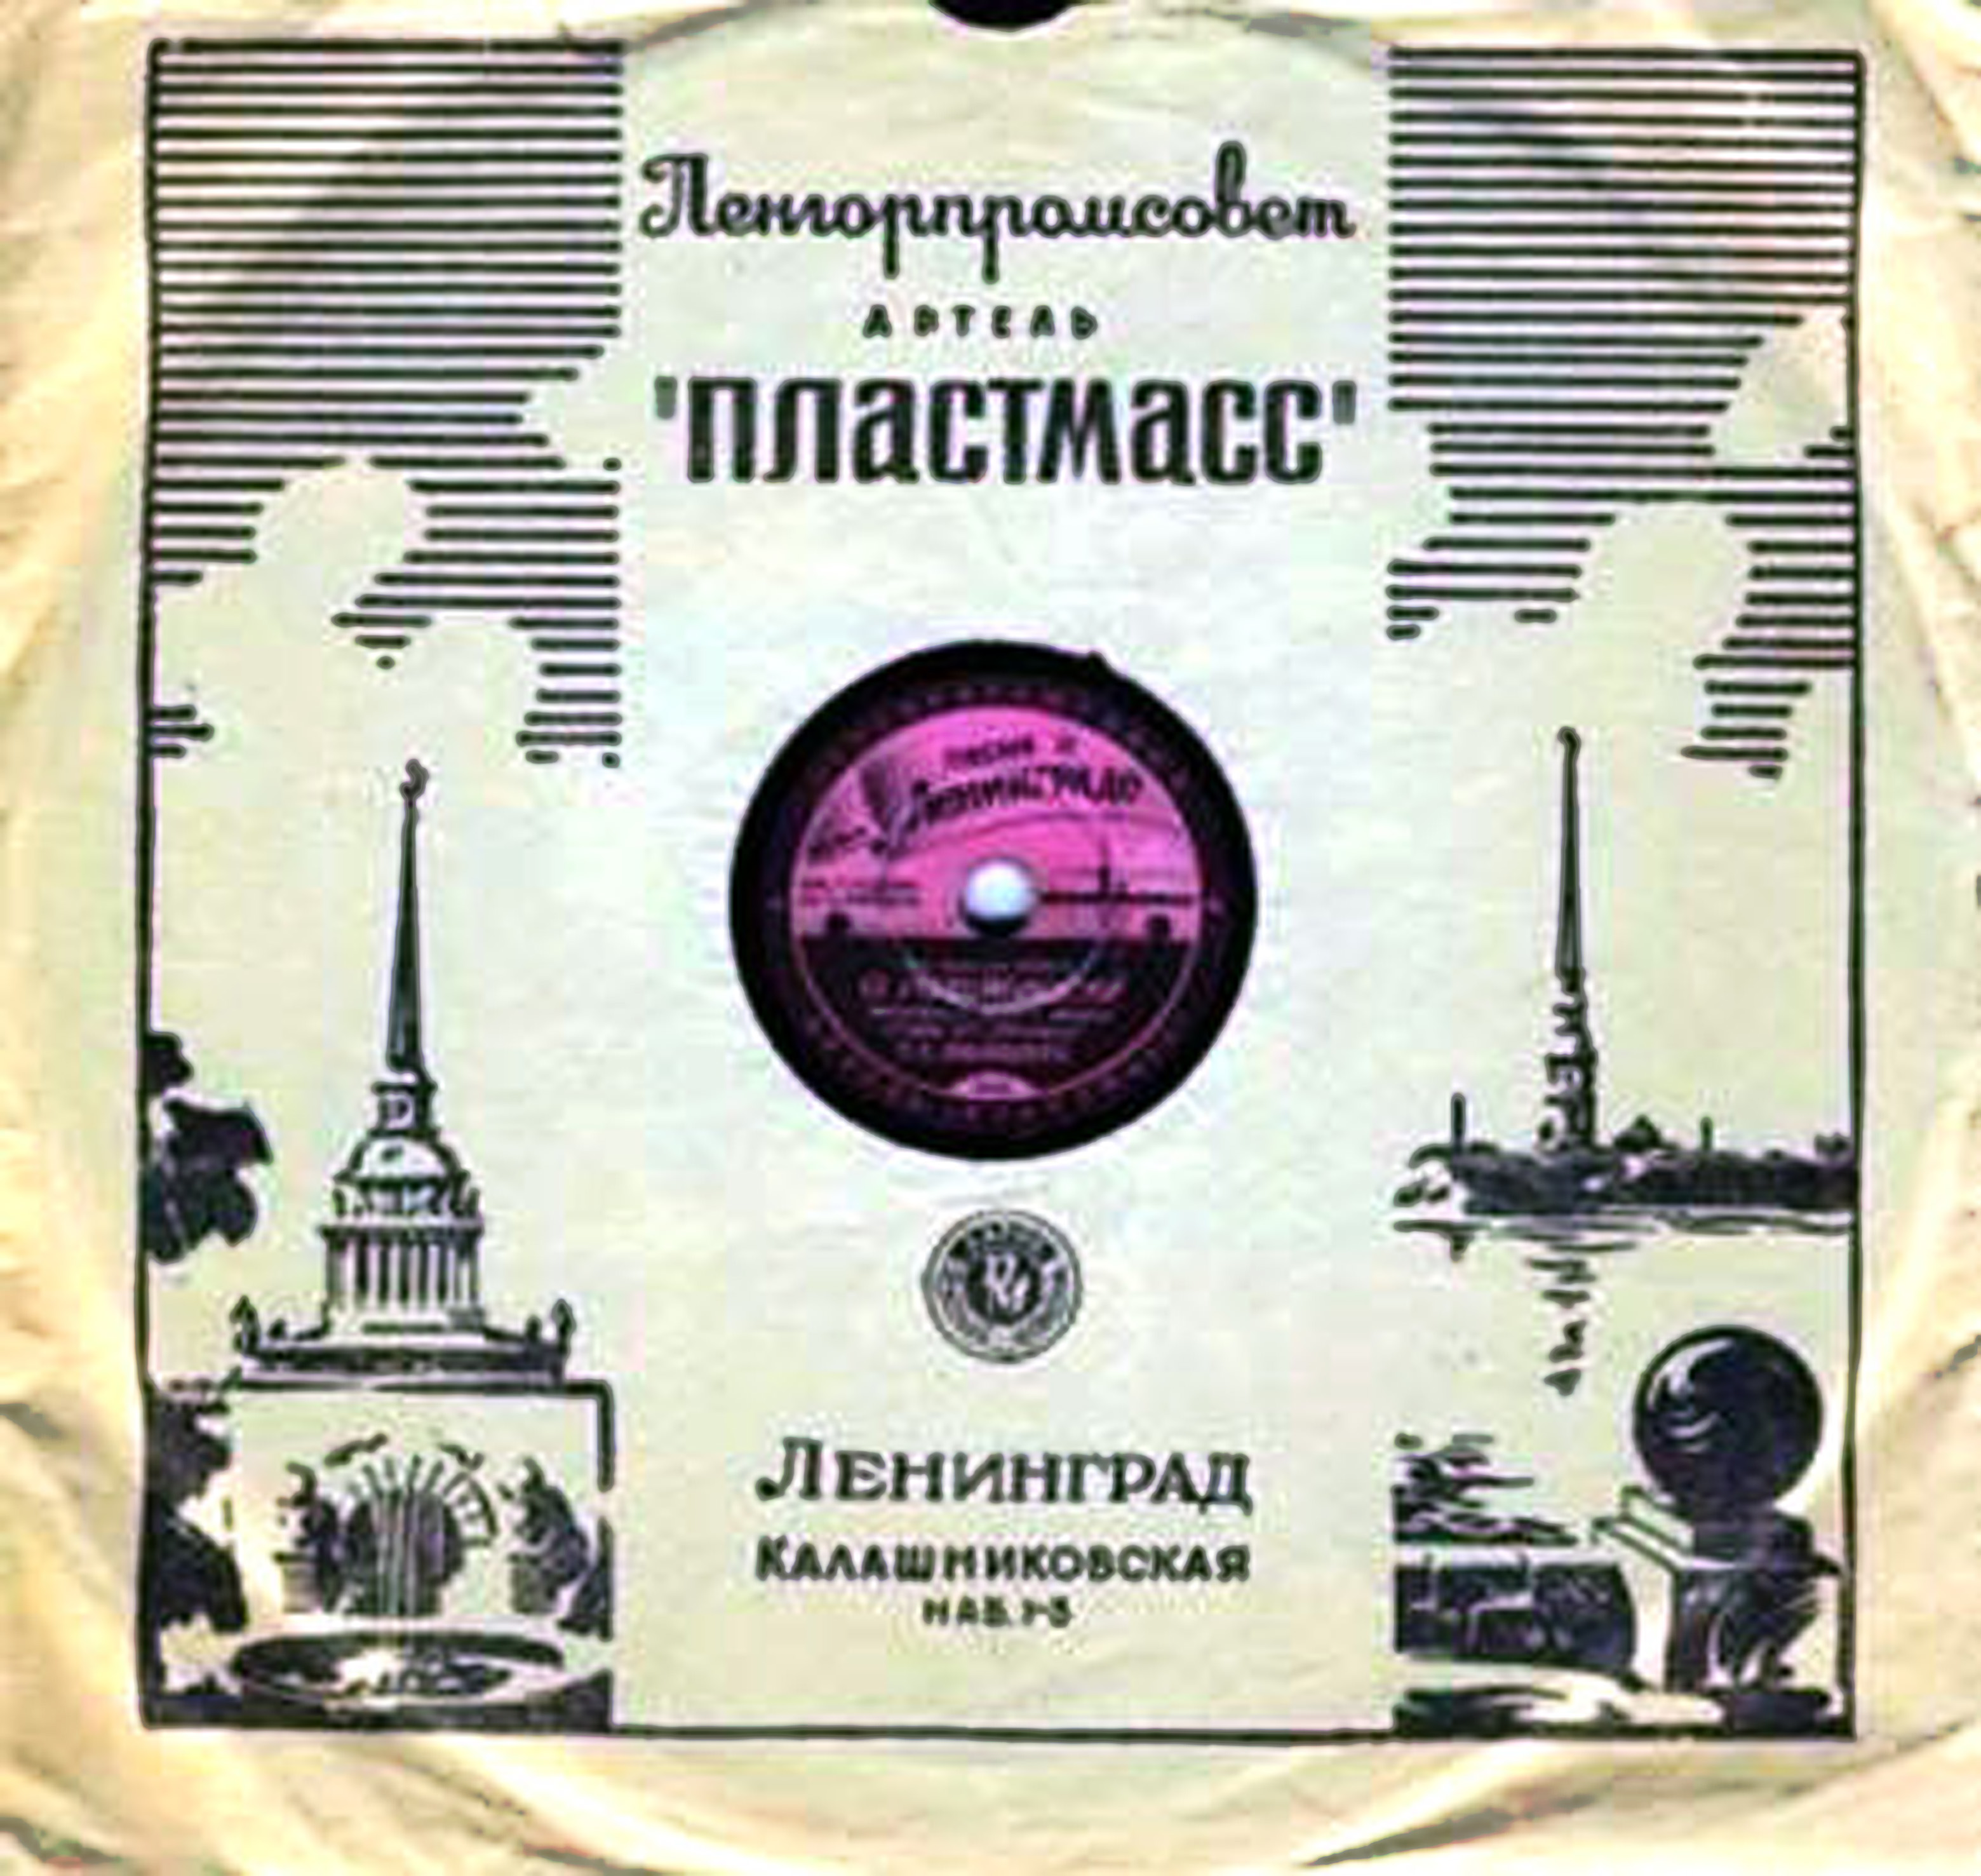 История ленинградской артели "Пластмасс" (история, каталог, датировка пластинок, дизайн этикеток)